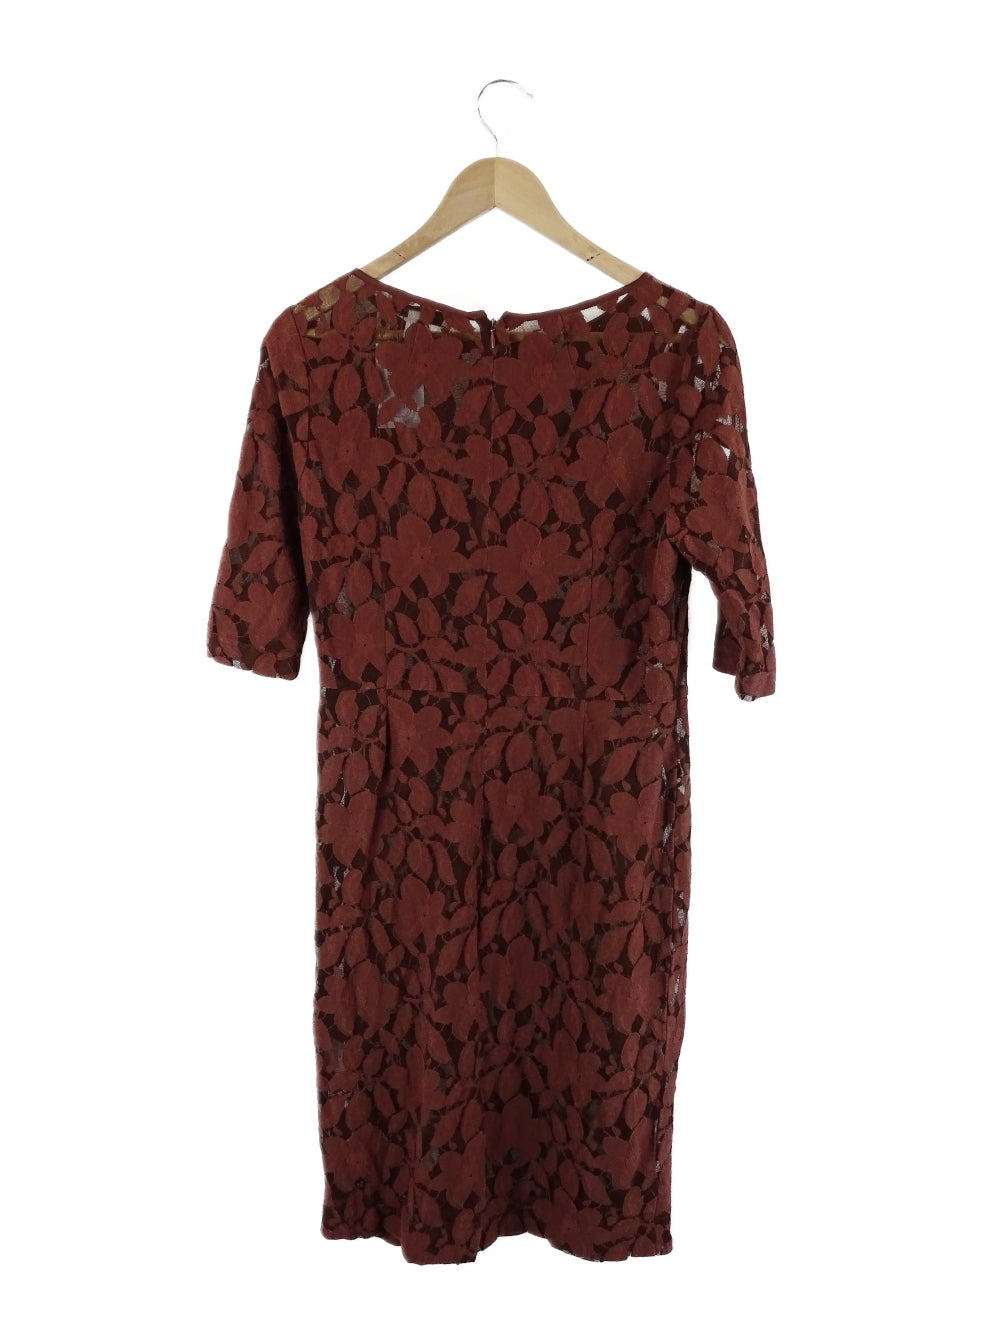 Perri Cutten Brown Lace Dress 12